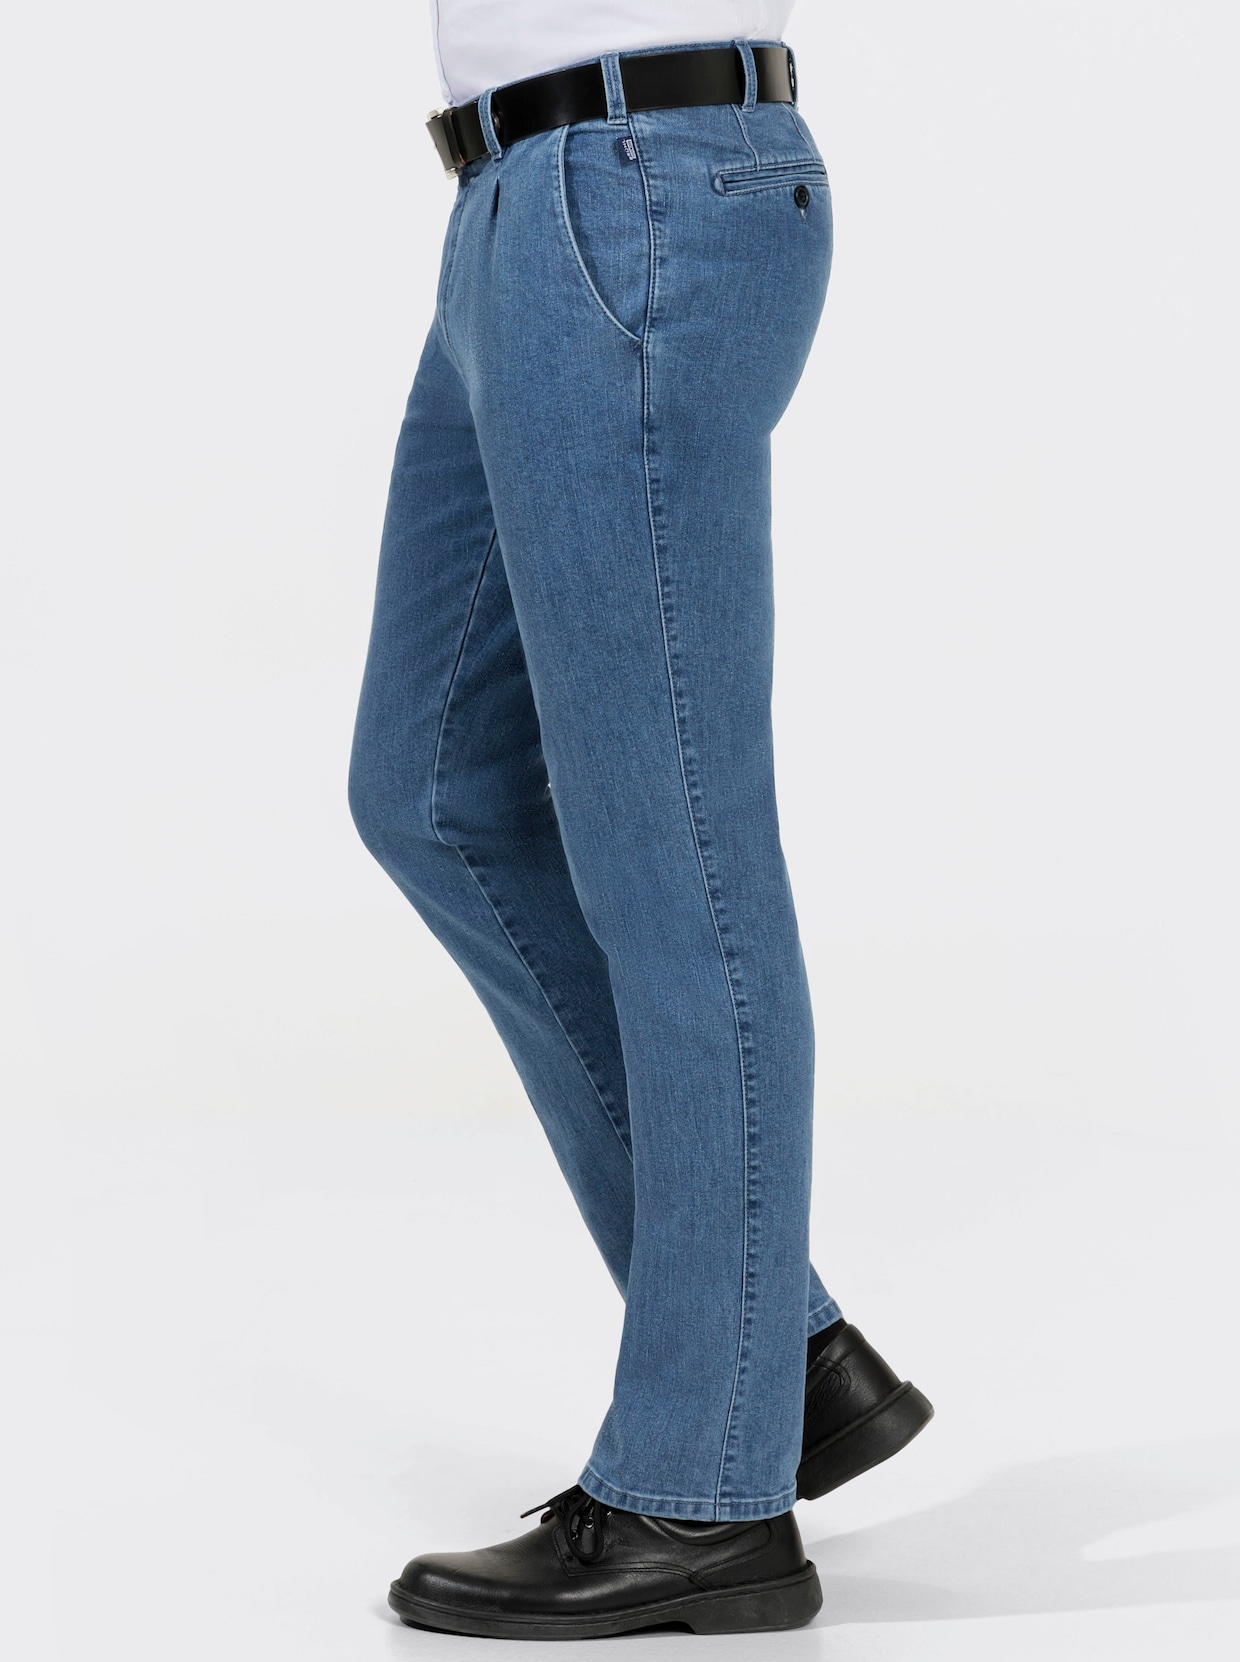 Brühl Jeans - blue-bleached